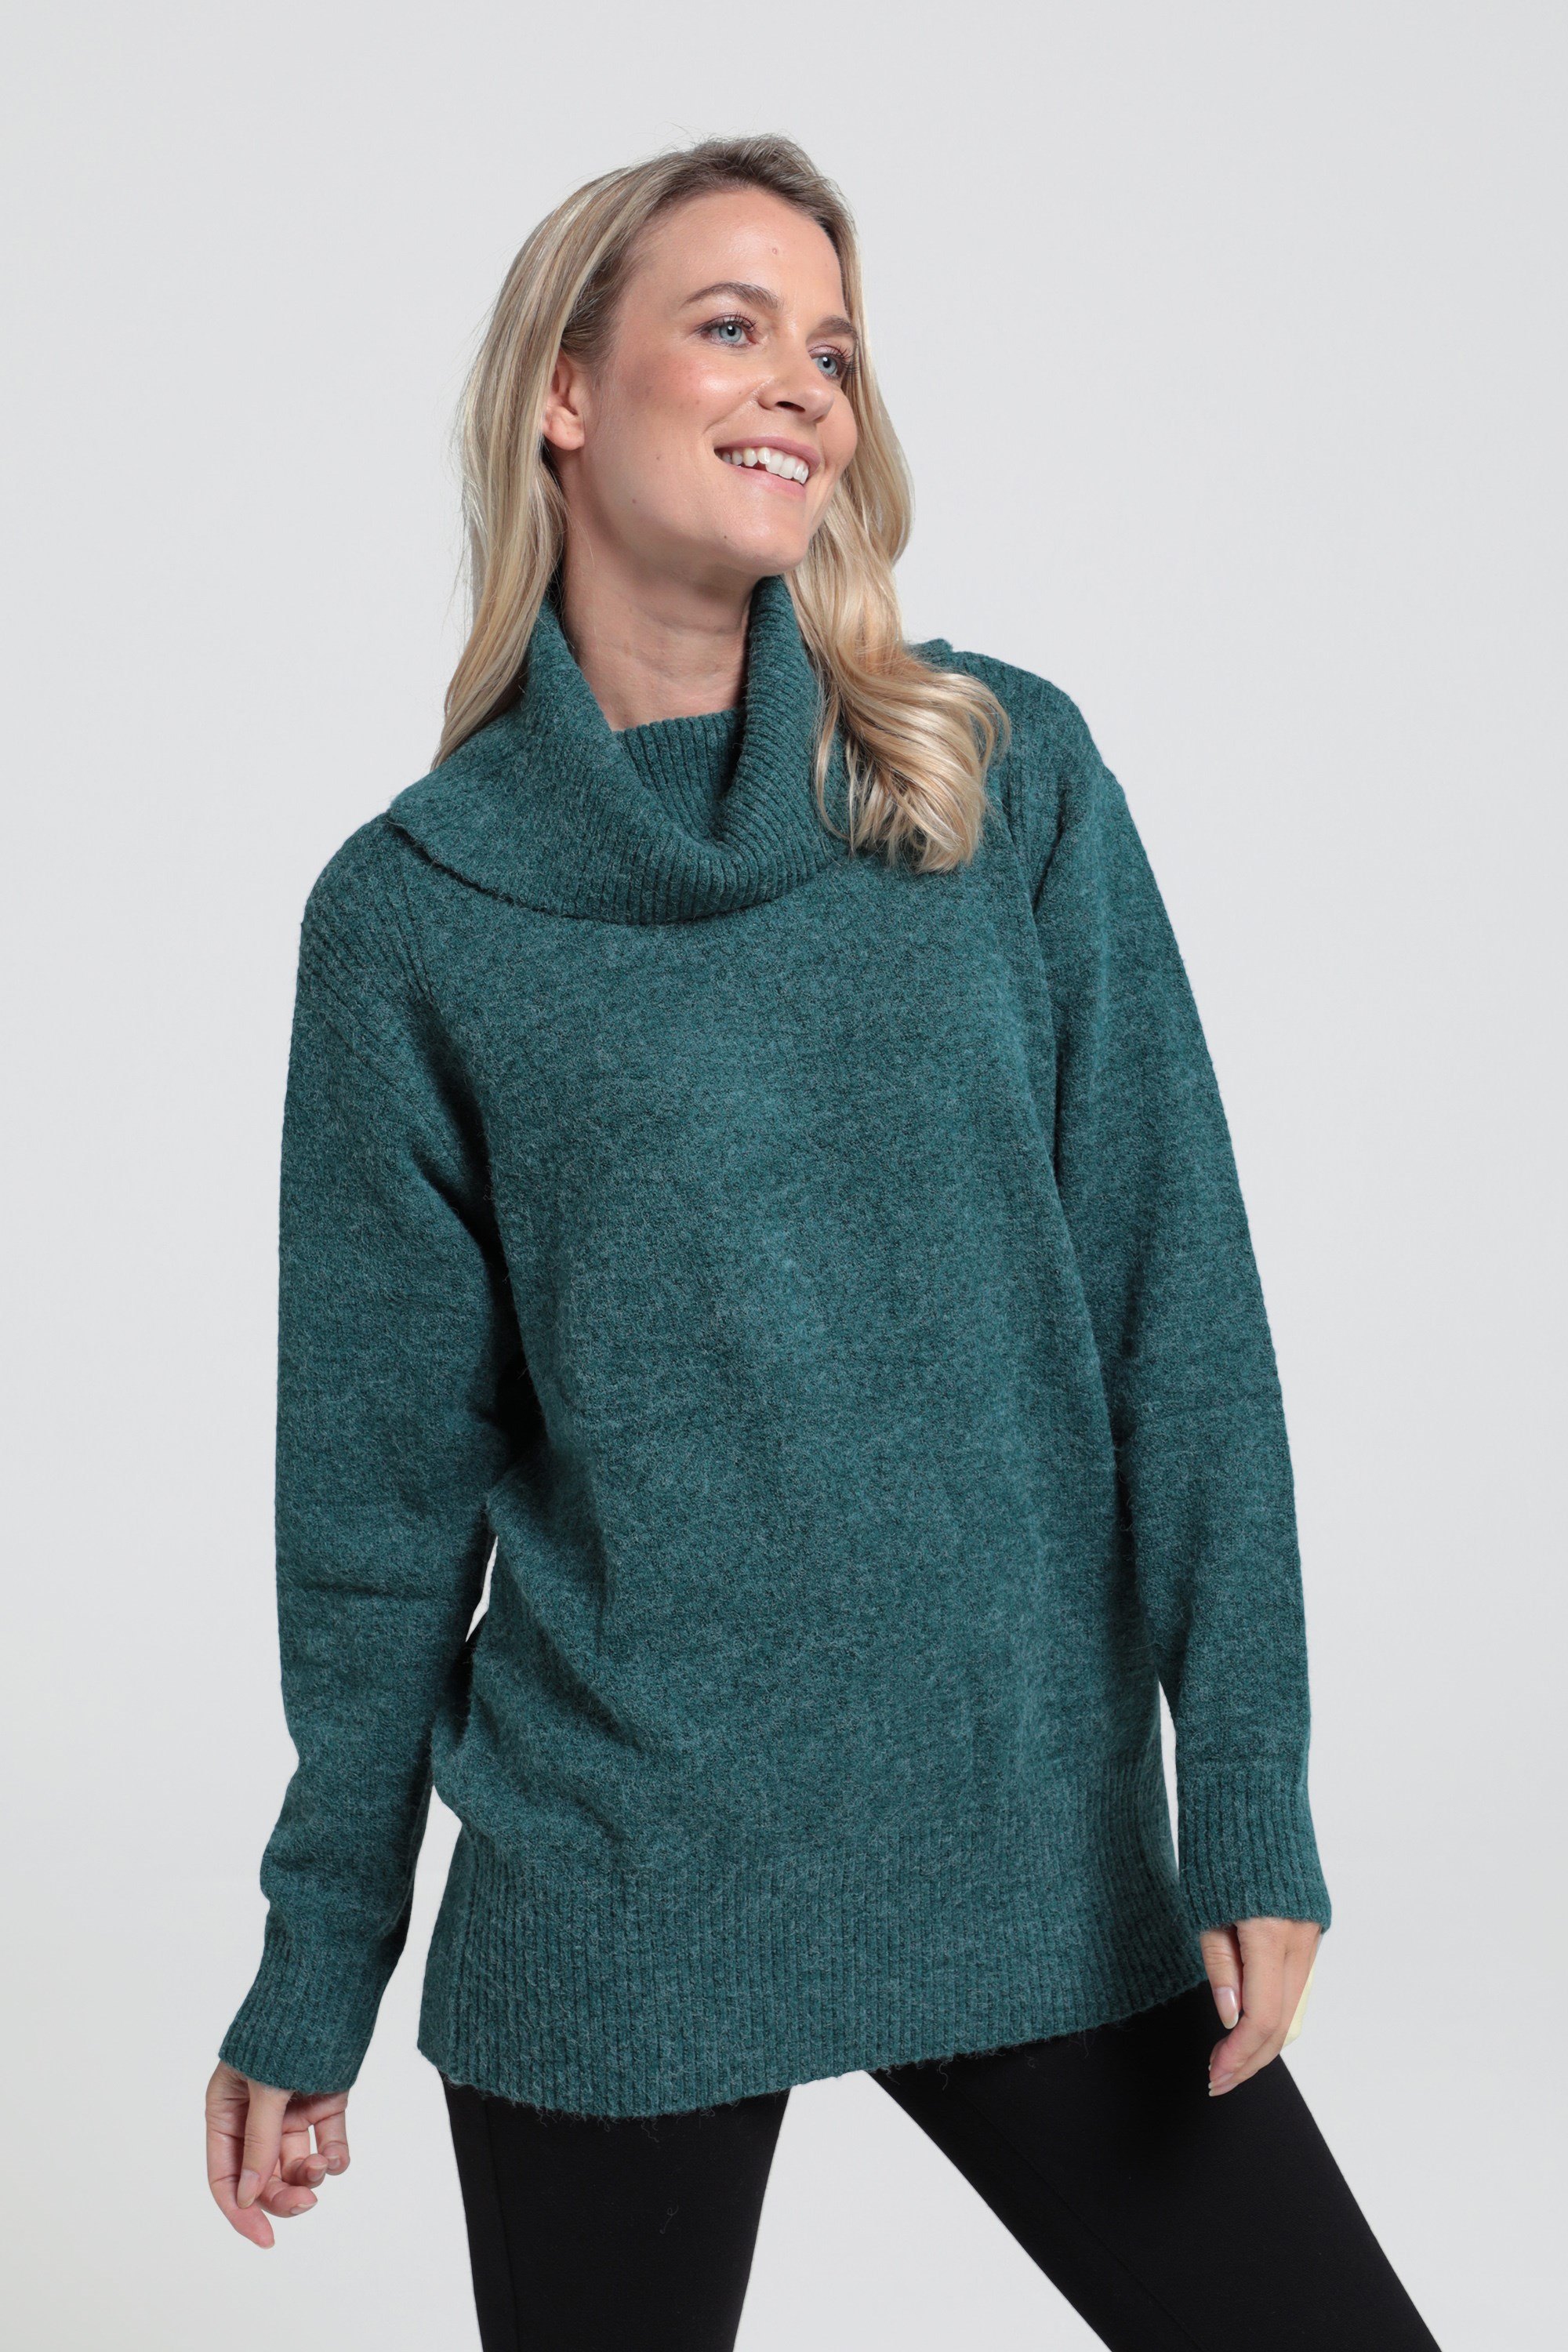 High Neck Womens Knitted Jumper - Green